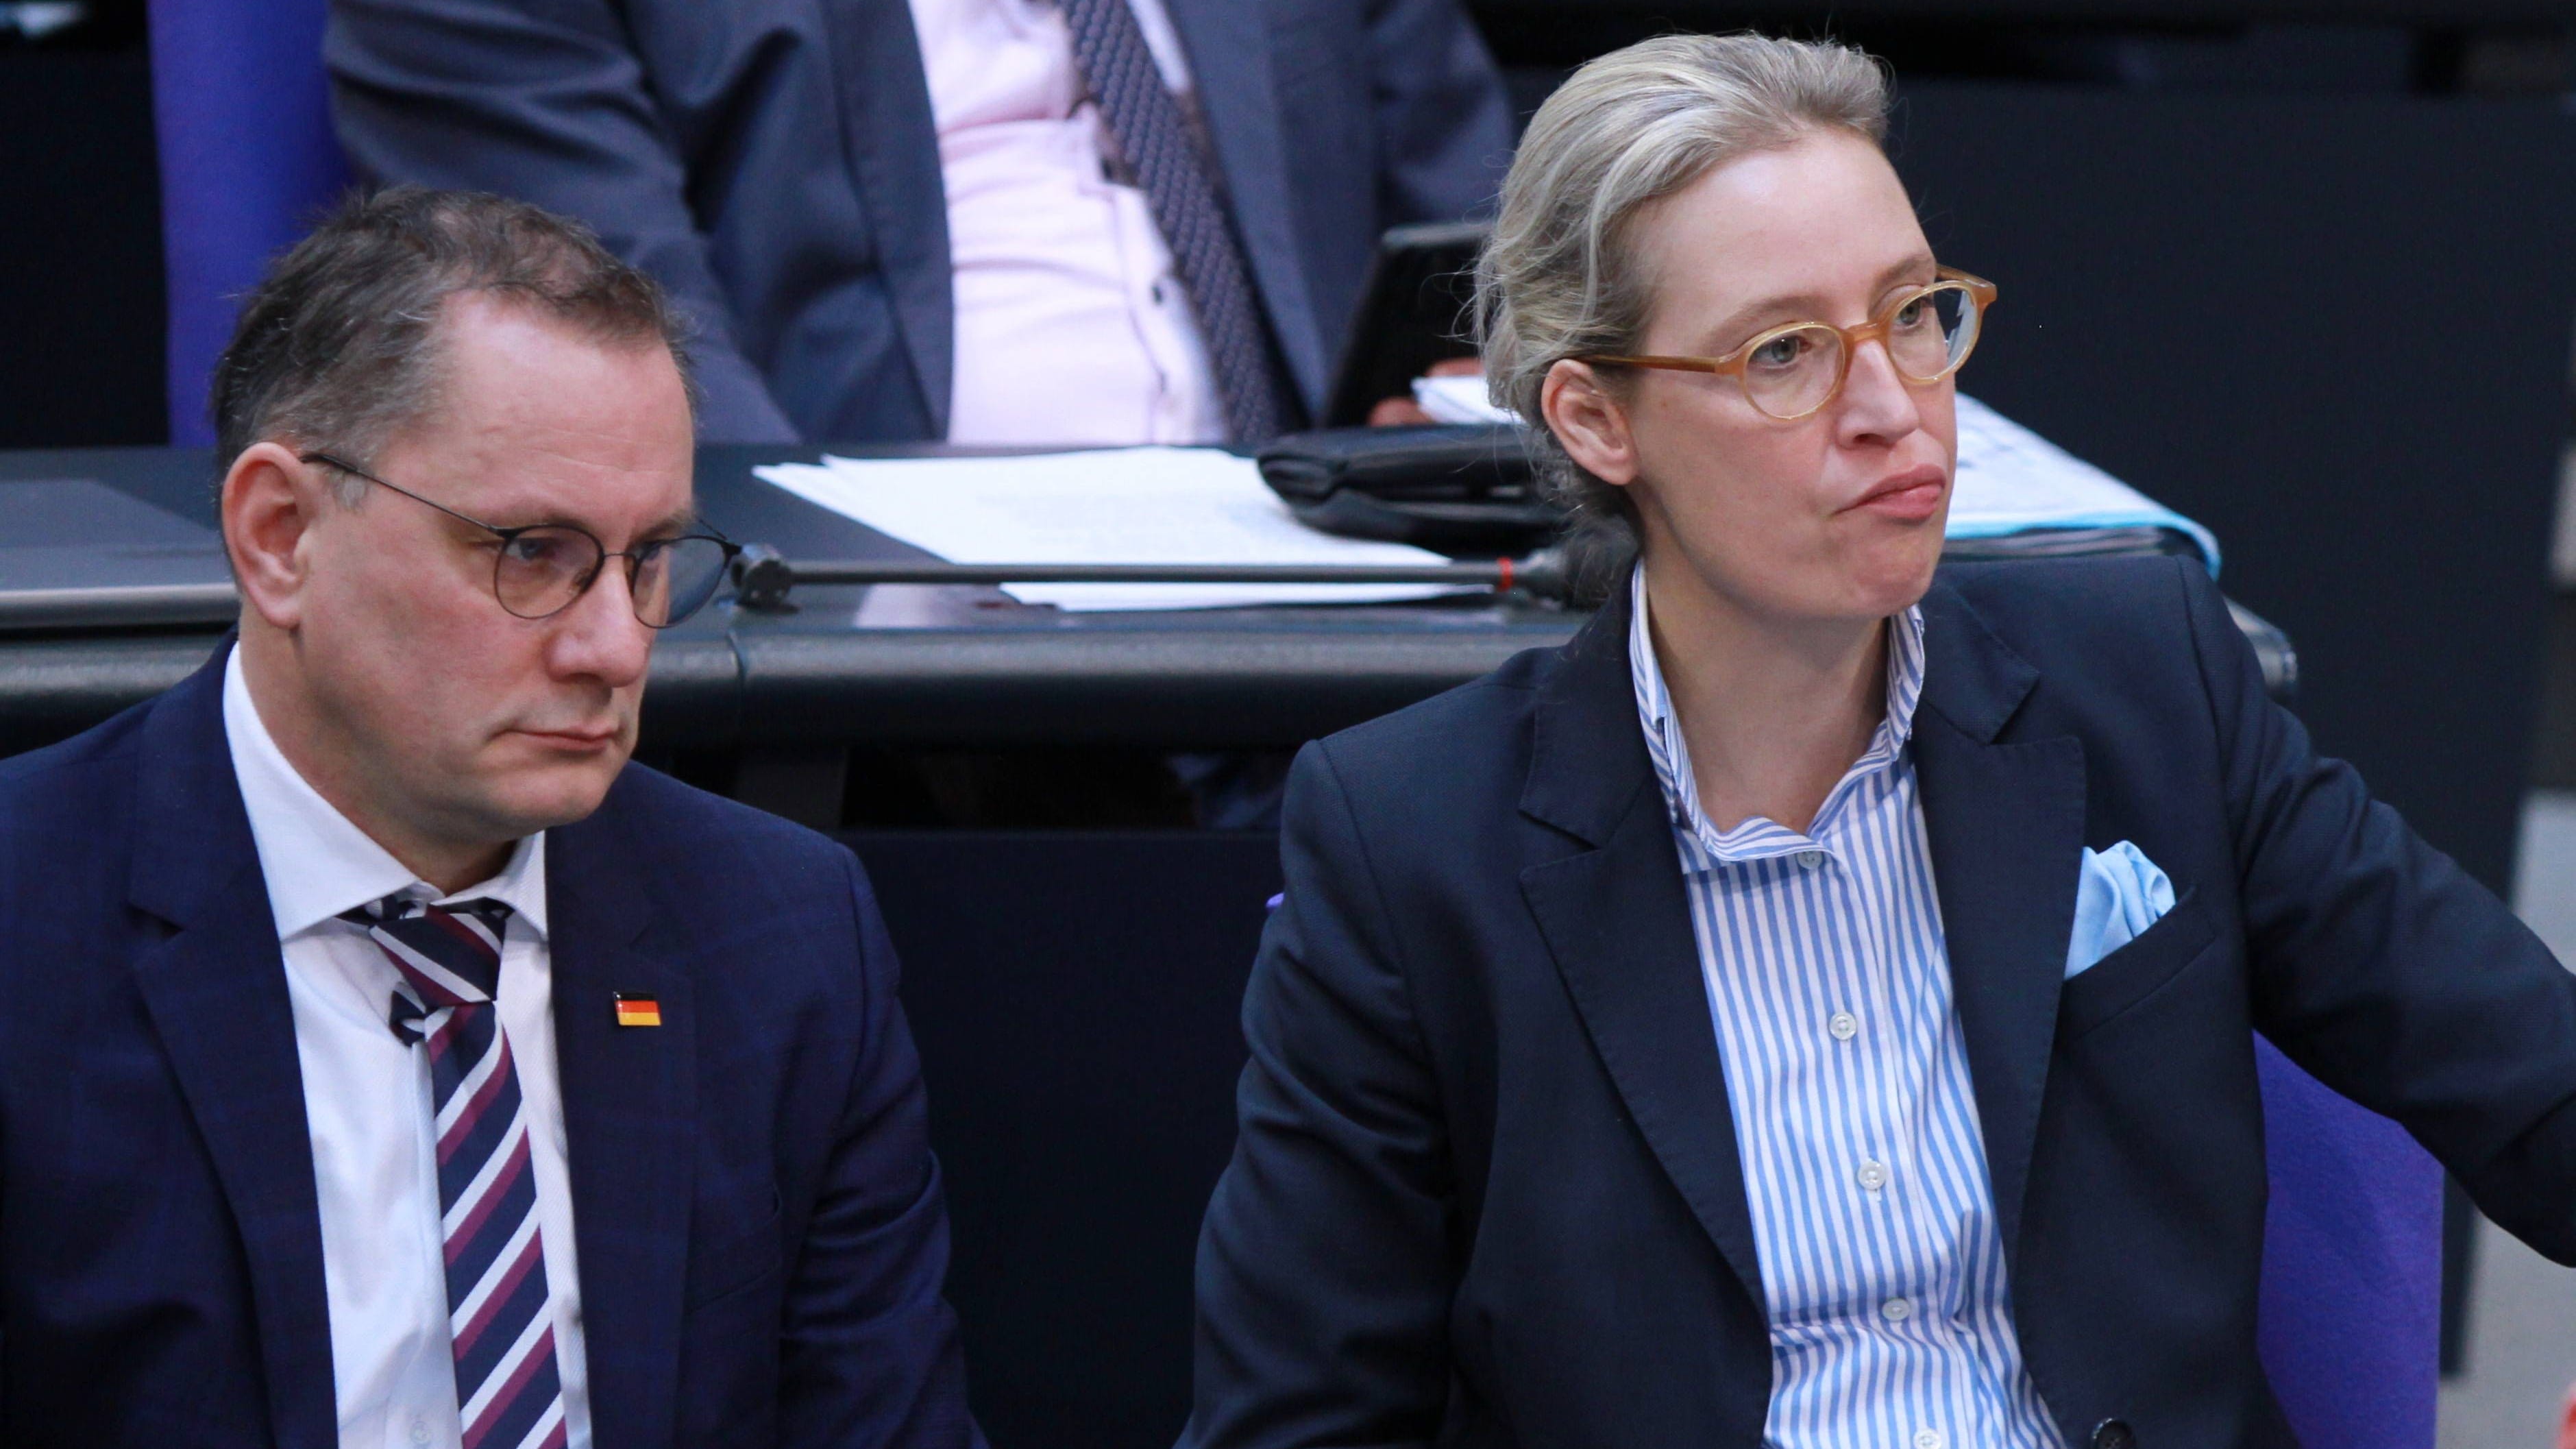 Urteil in Münster: Verfassungsschutz darf AfD als Verdachtsfall einstufen